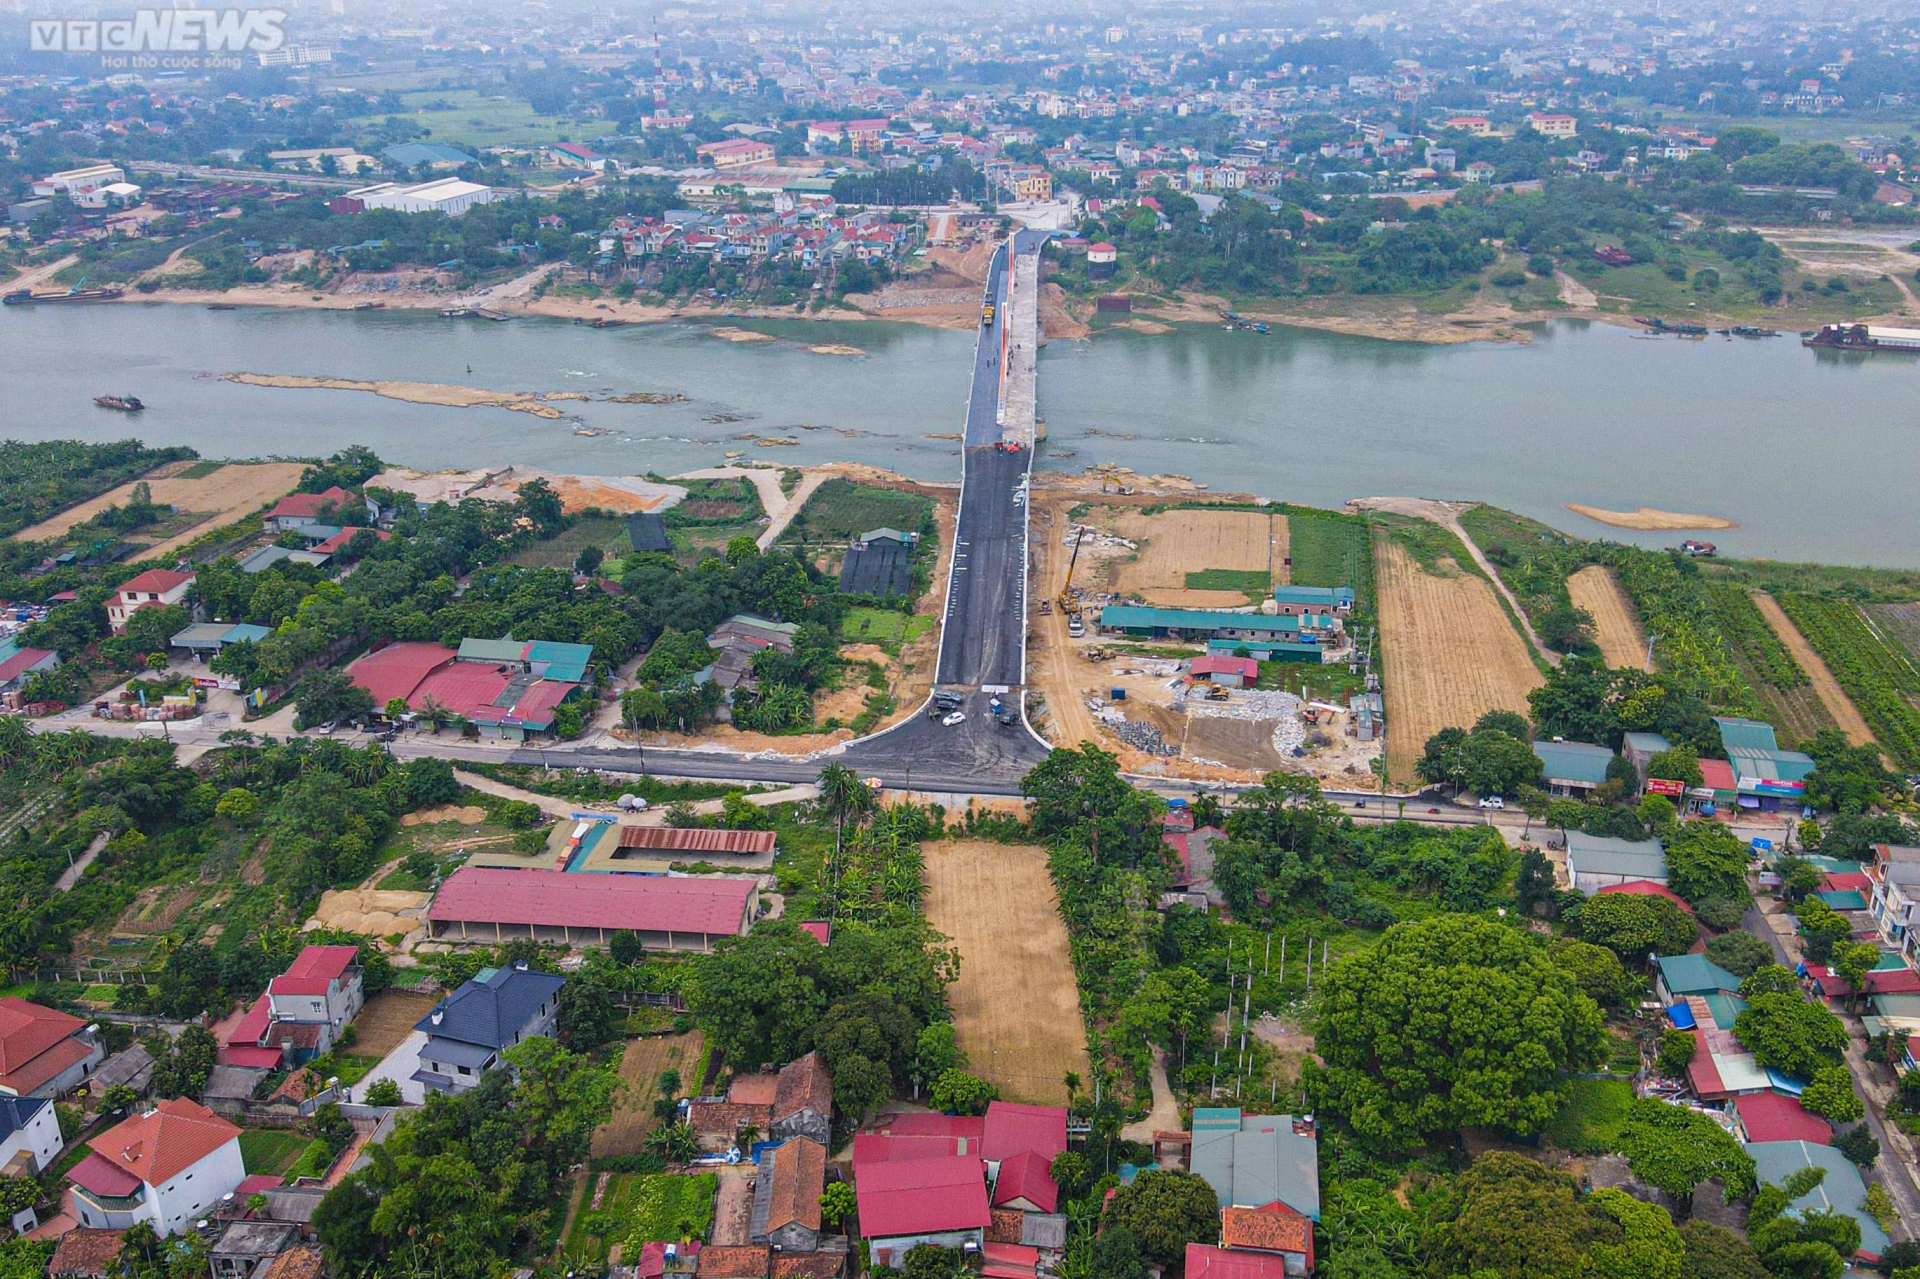 Chiêm ngưỡng cây cầu 540 tỷ đồng nối 2 tỉnh Vĩnh Phúc và Phú Thọ - Ảnh 2.